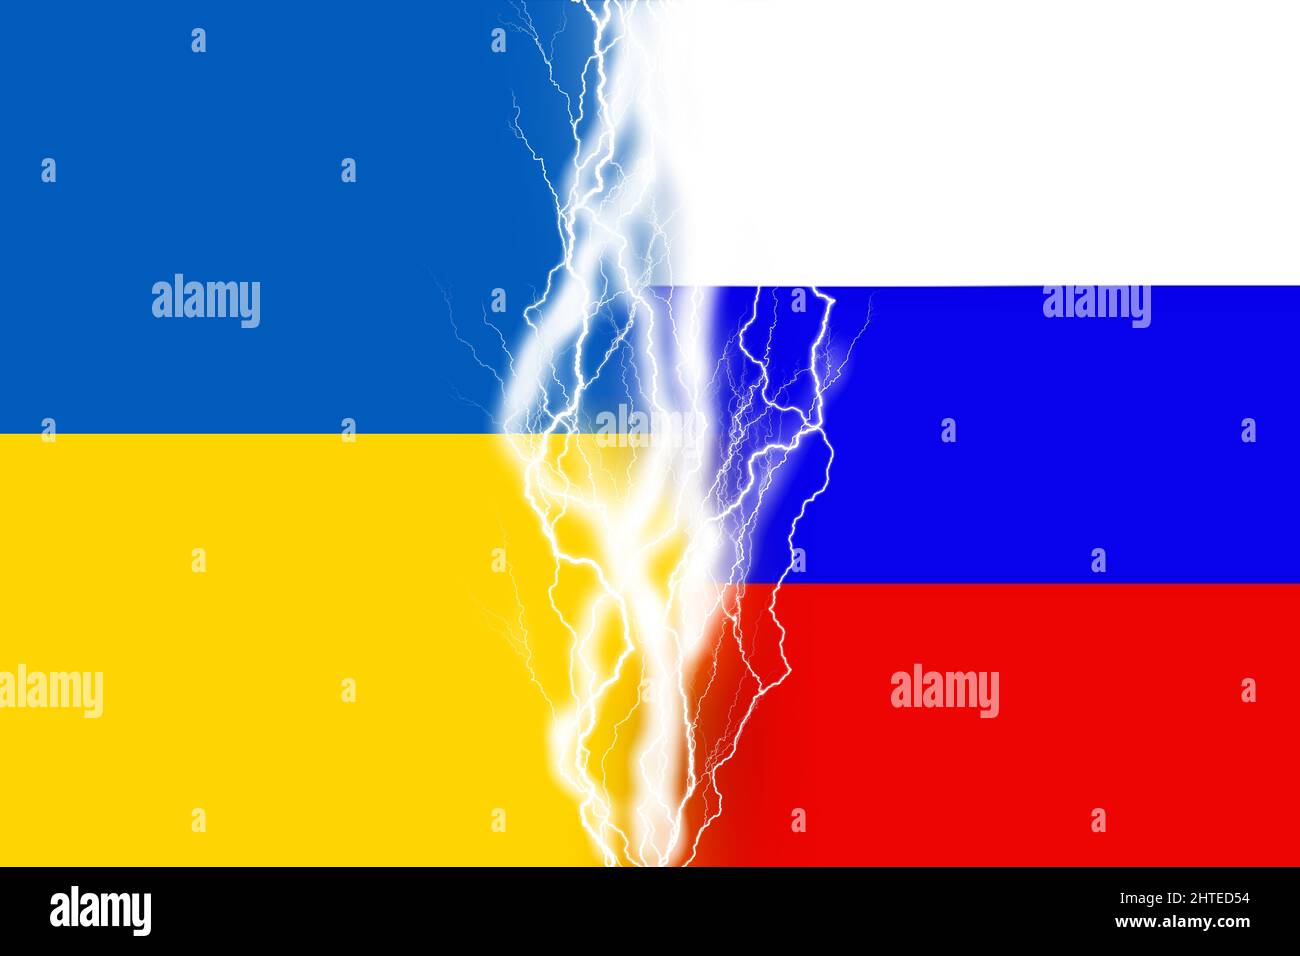 Effetti di luce tra bandiere di Ucraina e Russia. Illustrazione della guerra russa Ucraina Foto Stock